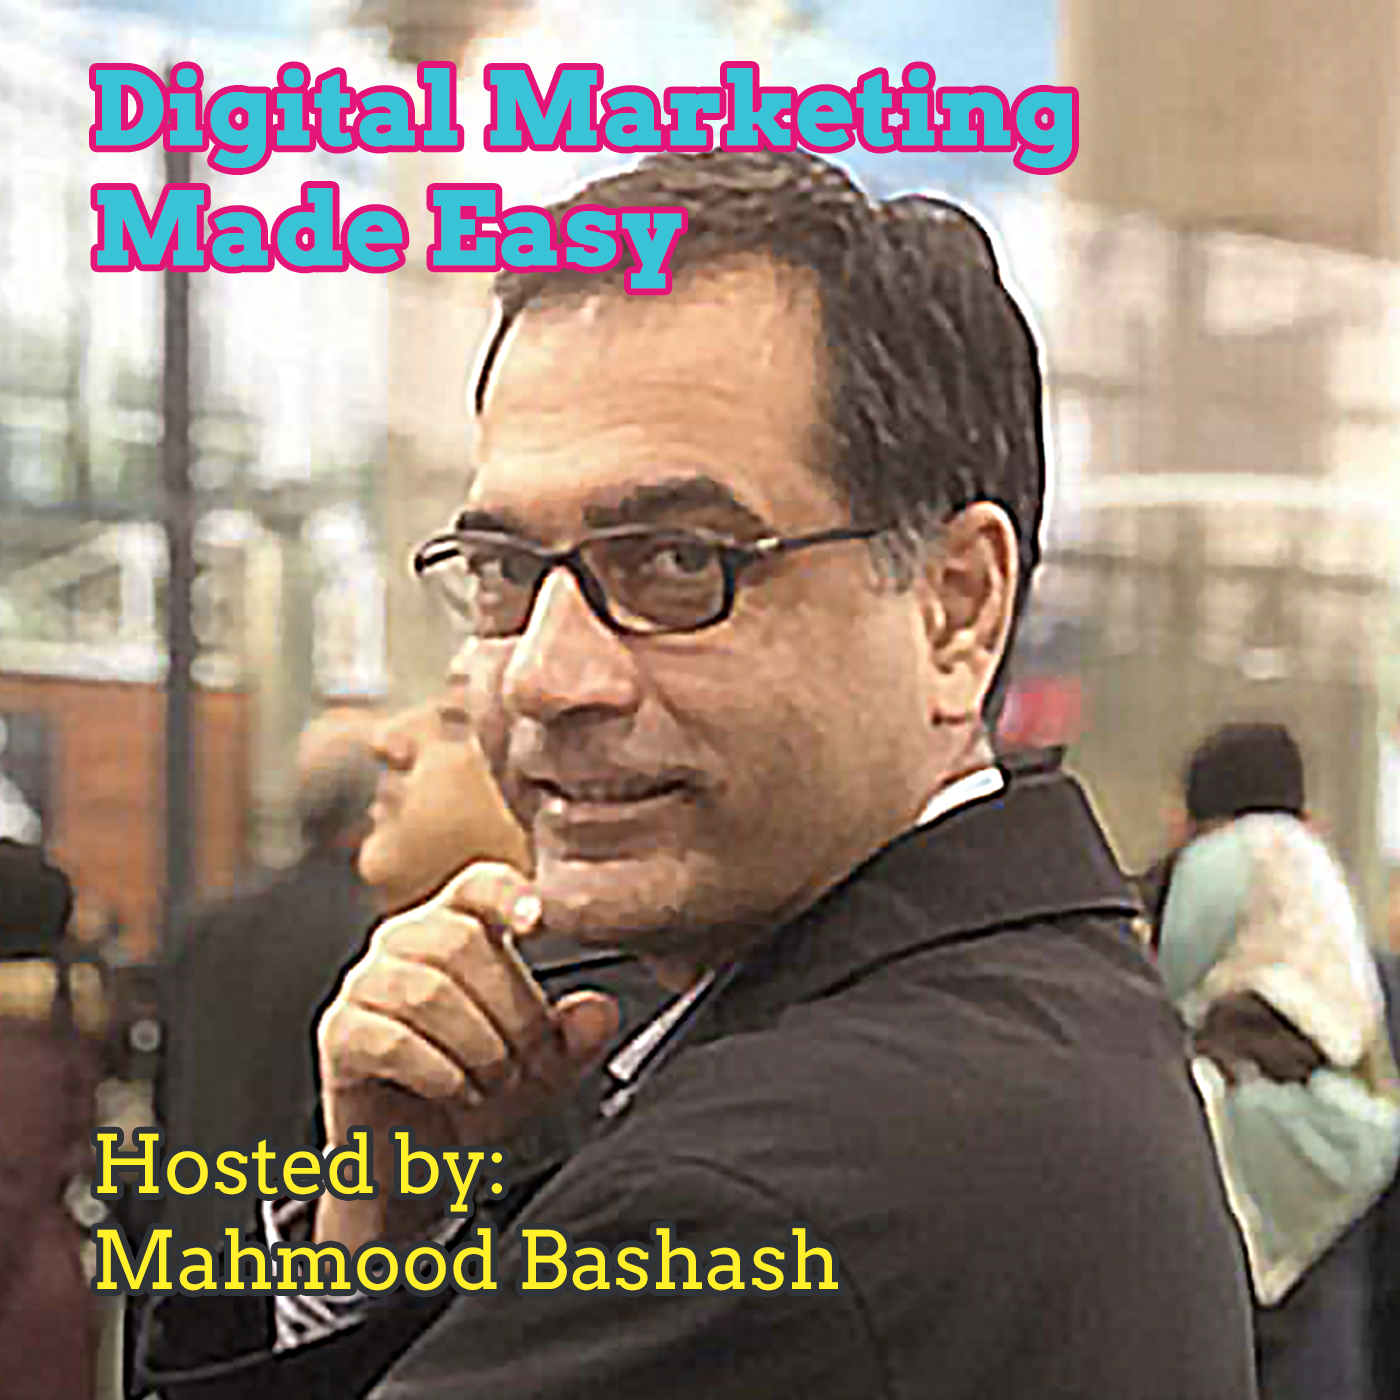 گپ های دیجیتال با محمود بشاش